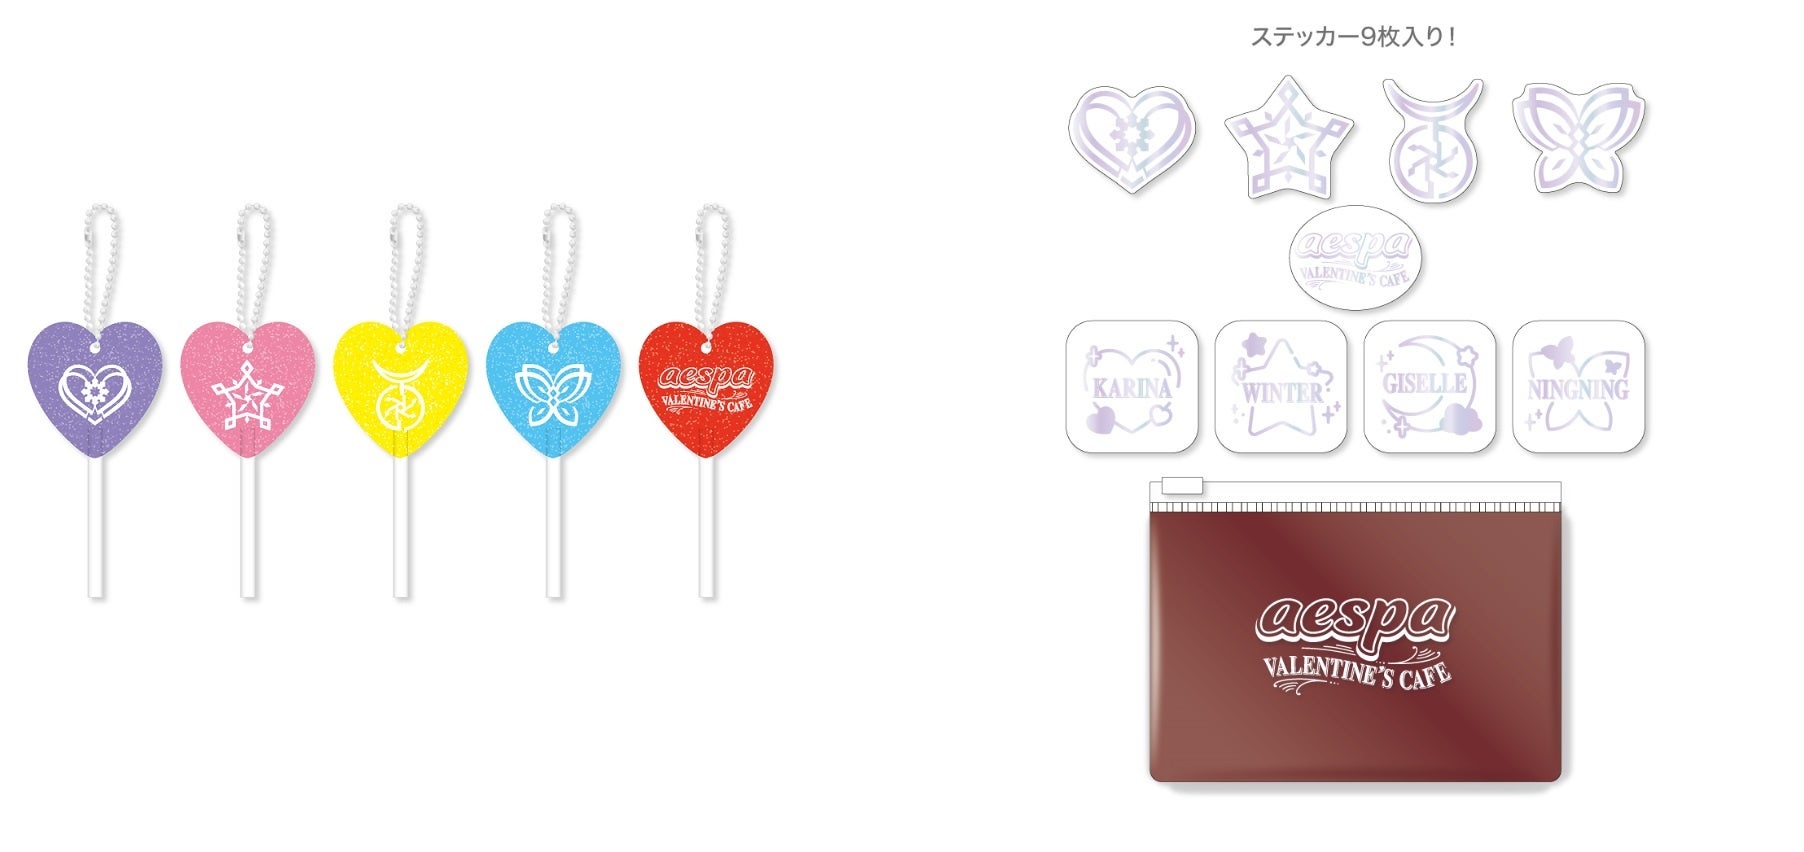 Calcomanía con foto (7 tipos aleatorios) Llavero estilo caramelo (5 tipos aleatorios) 1100 yenes (1210 yenes con impuestos incluidos)